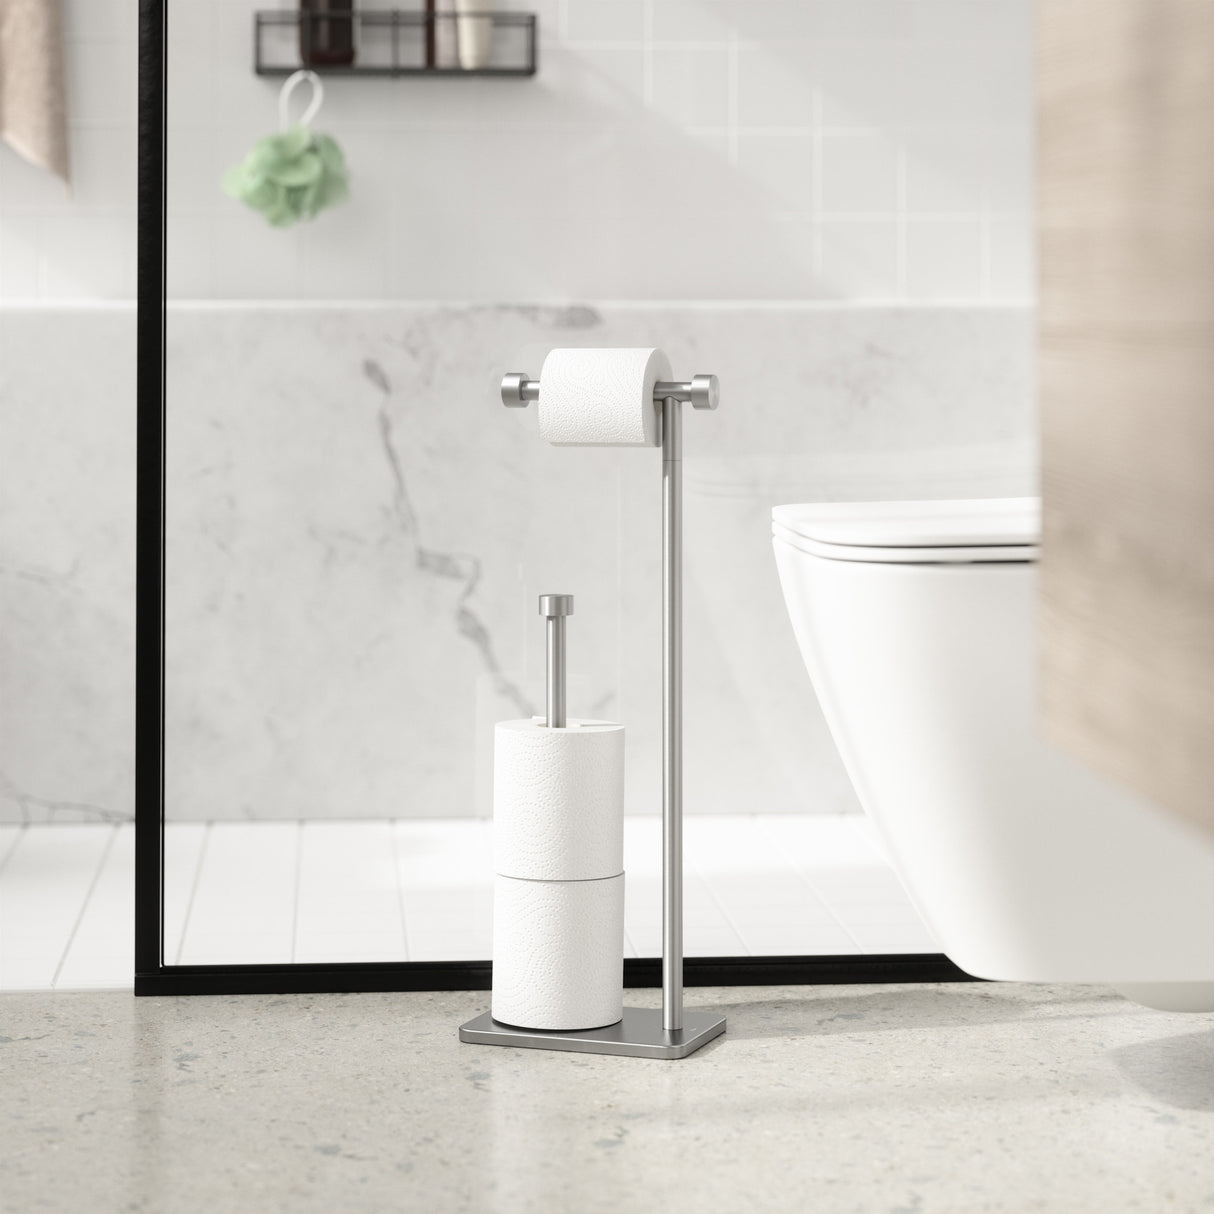 Umbra Portaloo Toilet Paper Stand (White-Nickel)